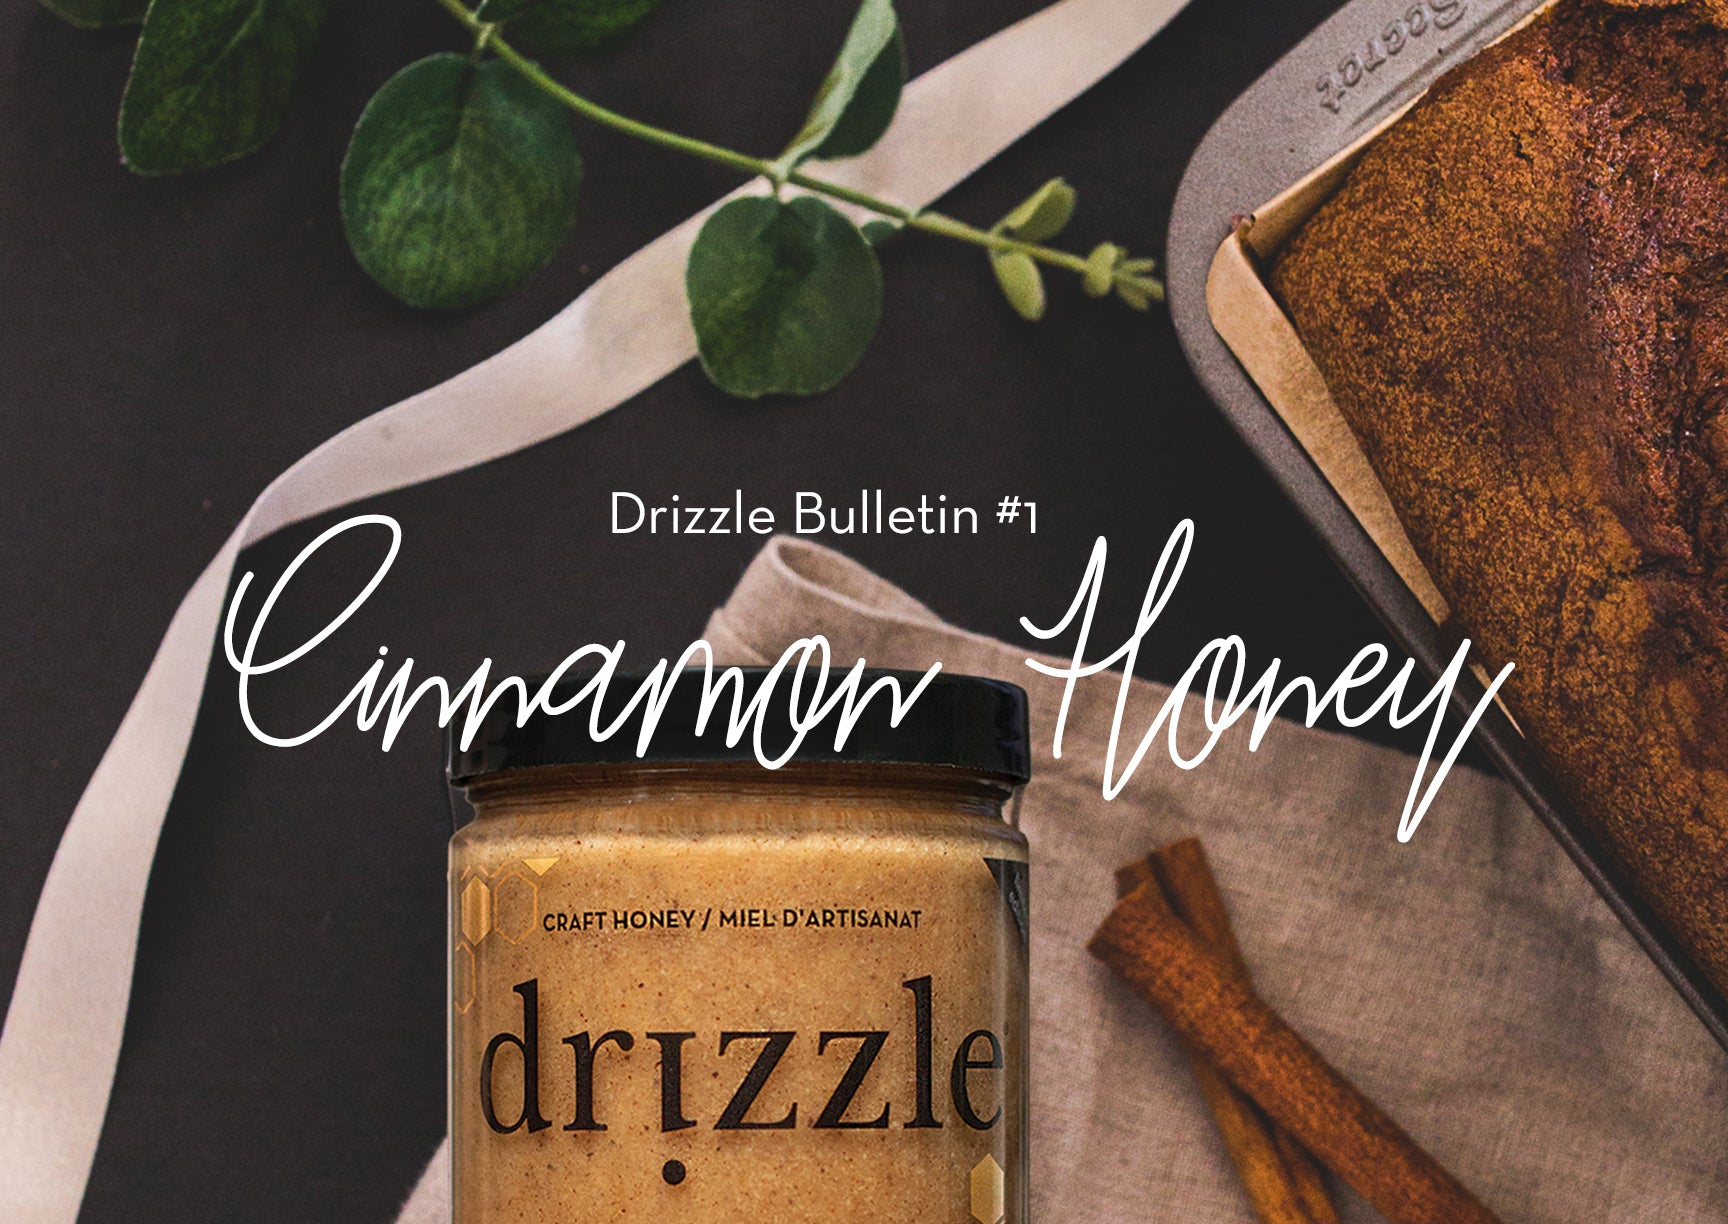 Bulletin 1: Cinnamon Spiced Honey Launch